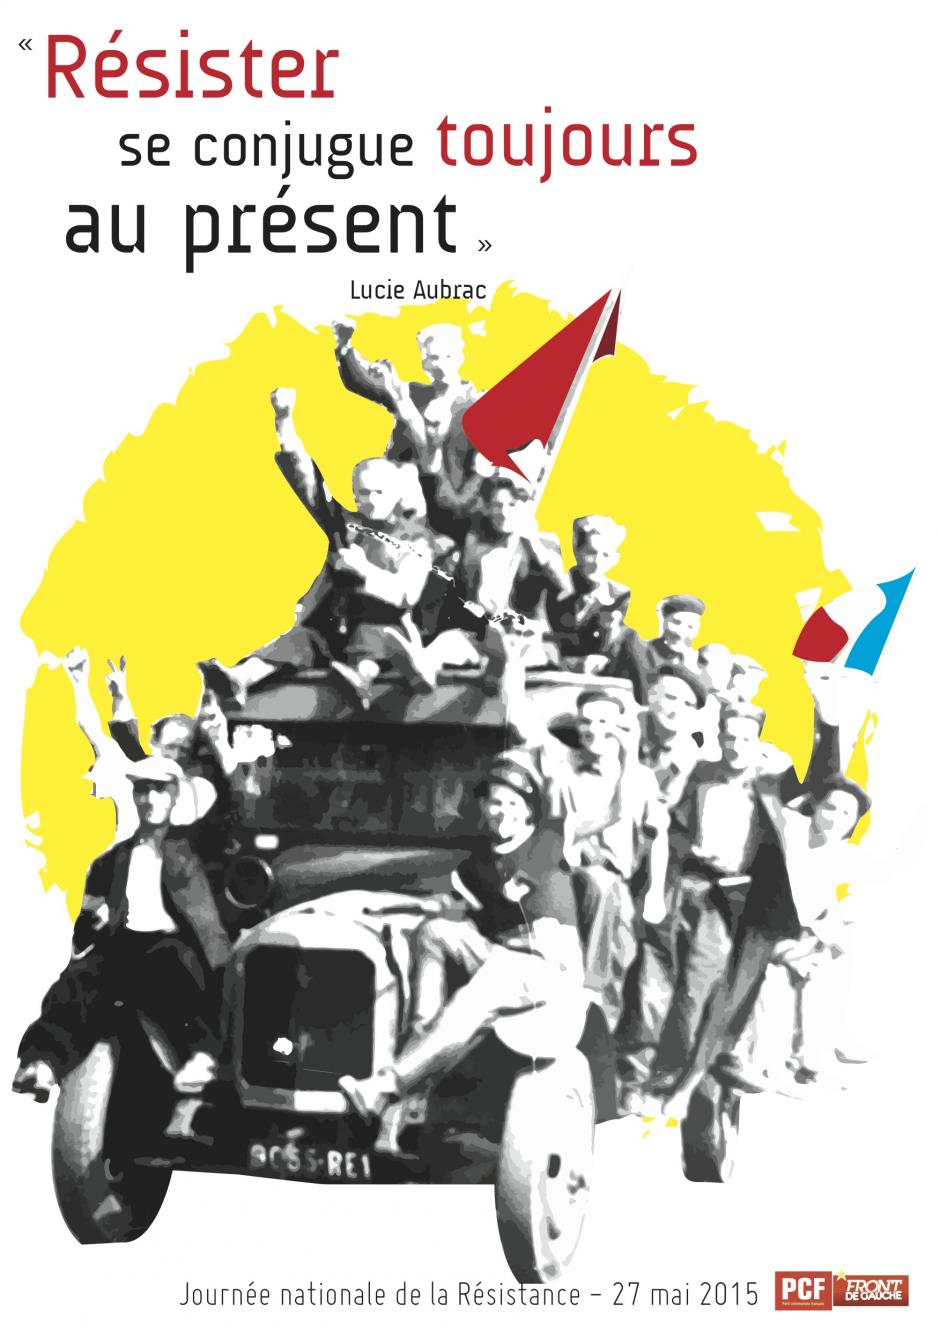 Hommage à la Résistance mercredi 27 mai à 17h30 à Quimper, place Blaise Pascal